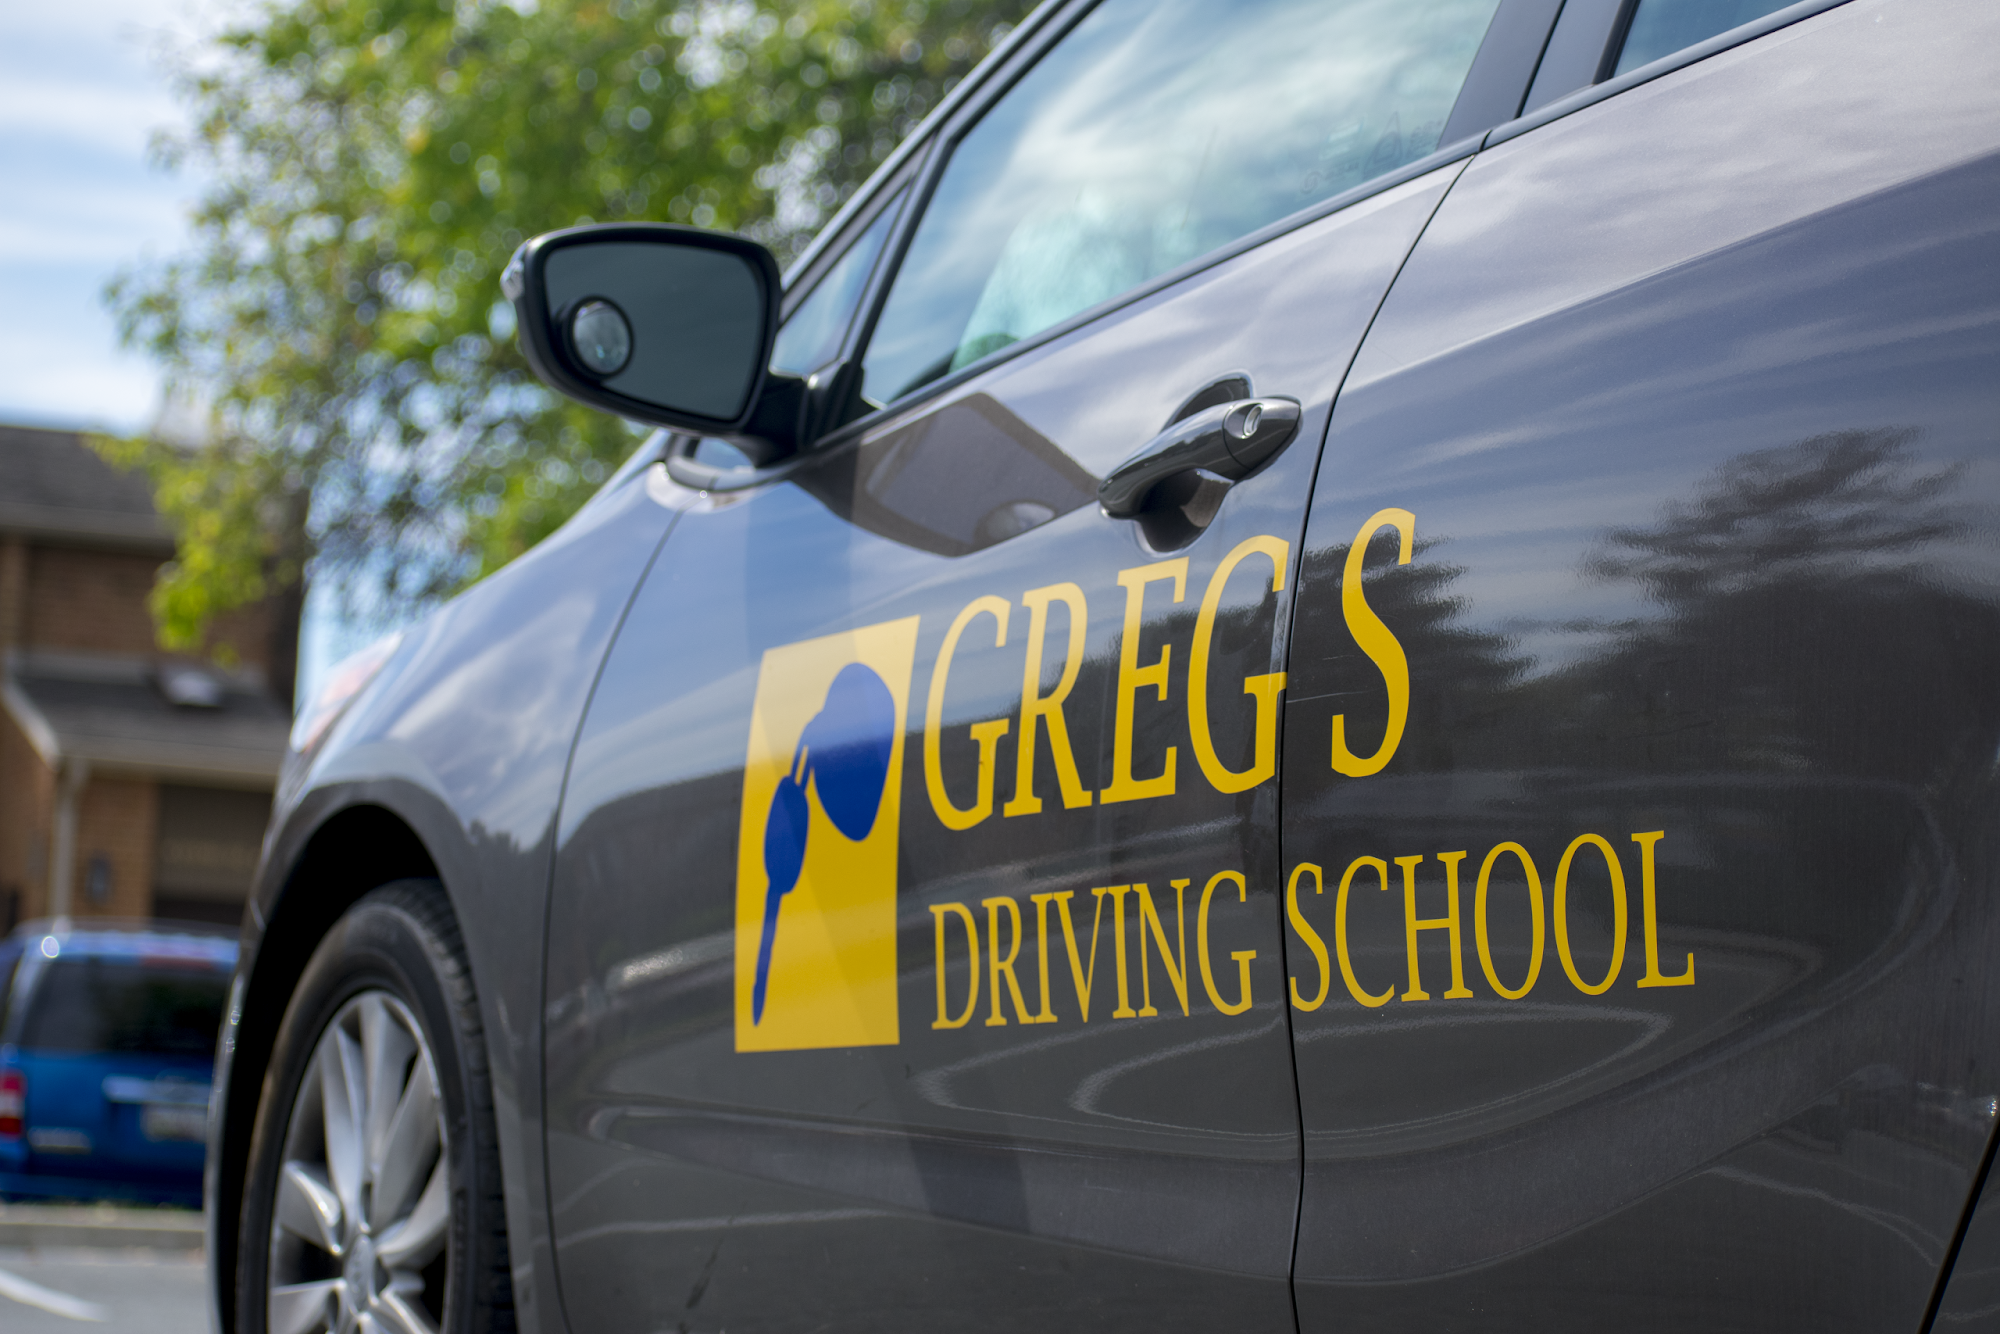 Greg's Driving School of Laurel